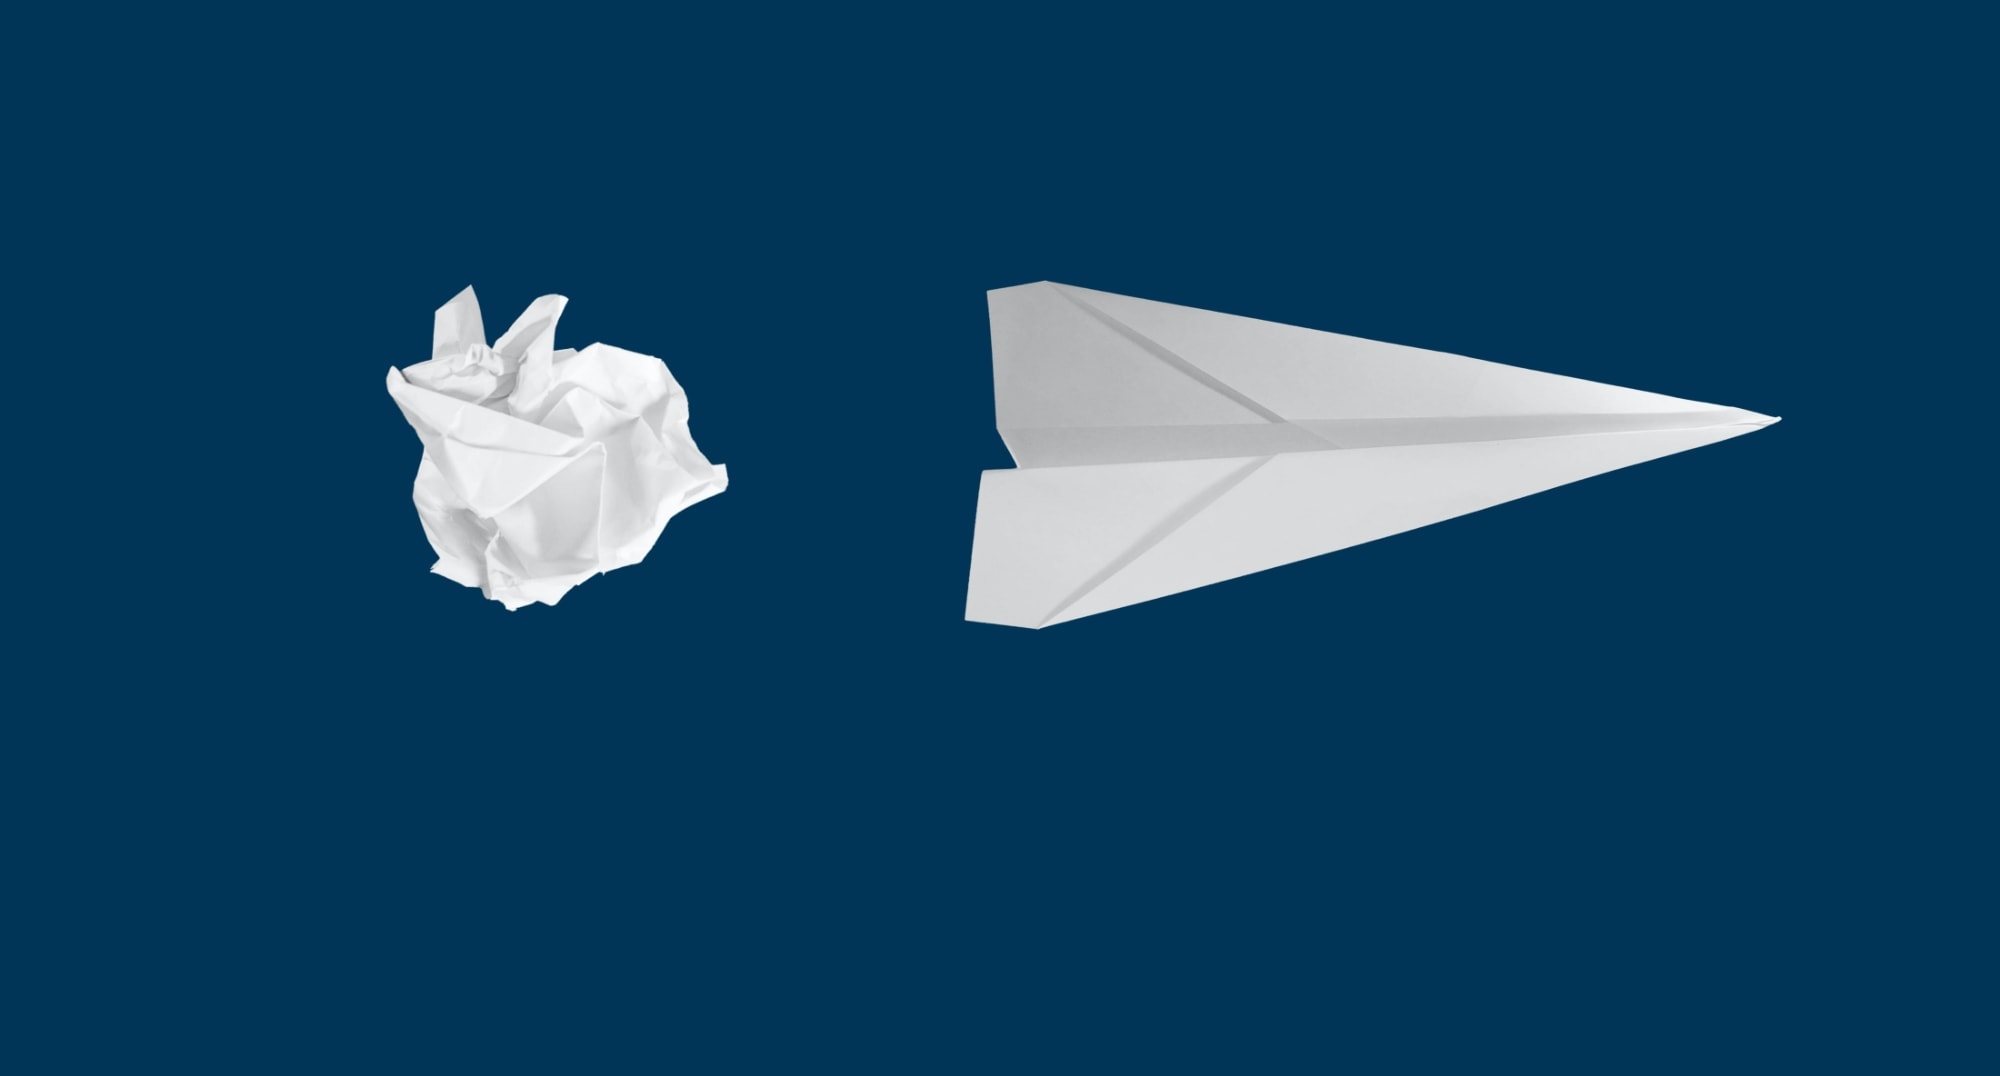 Matt-Ridley-paper-plane